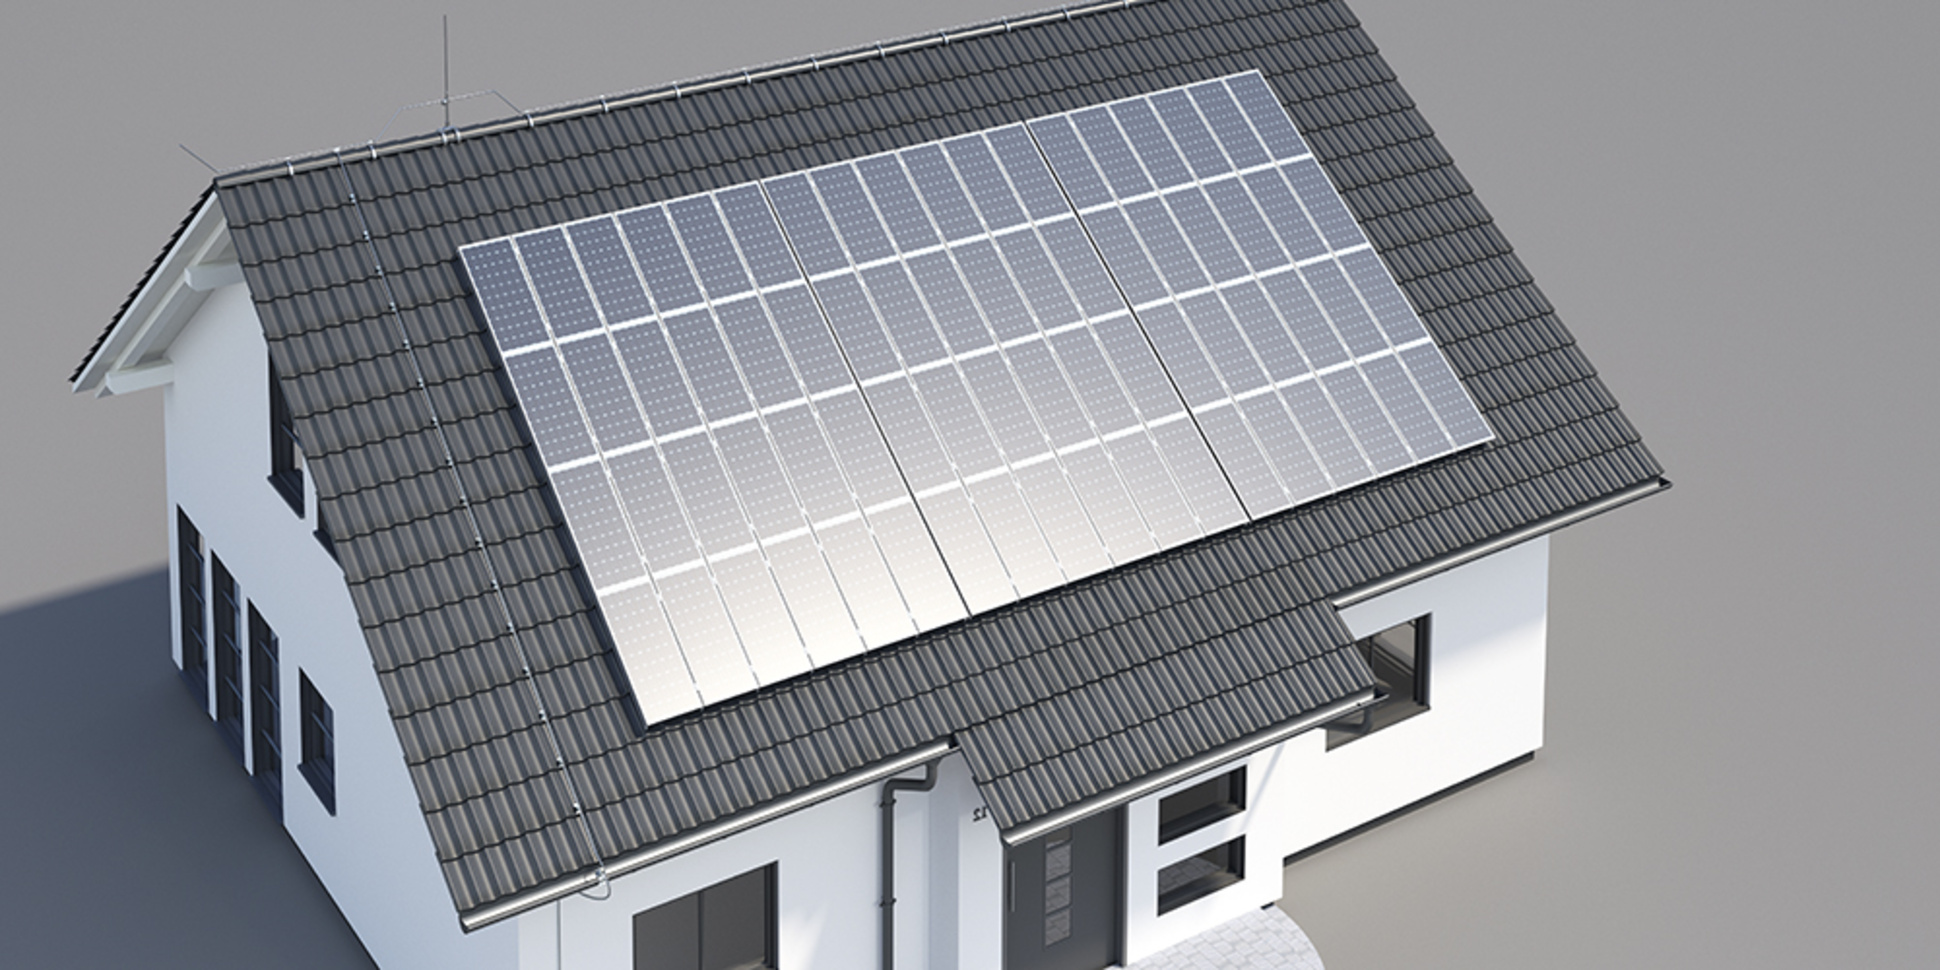 Umfassender Schutz für Photovoltaikanlagen bei Giaquinta Elektrotechnik in Elsenfeld